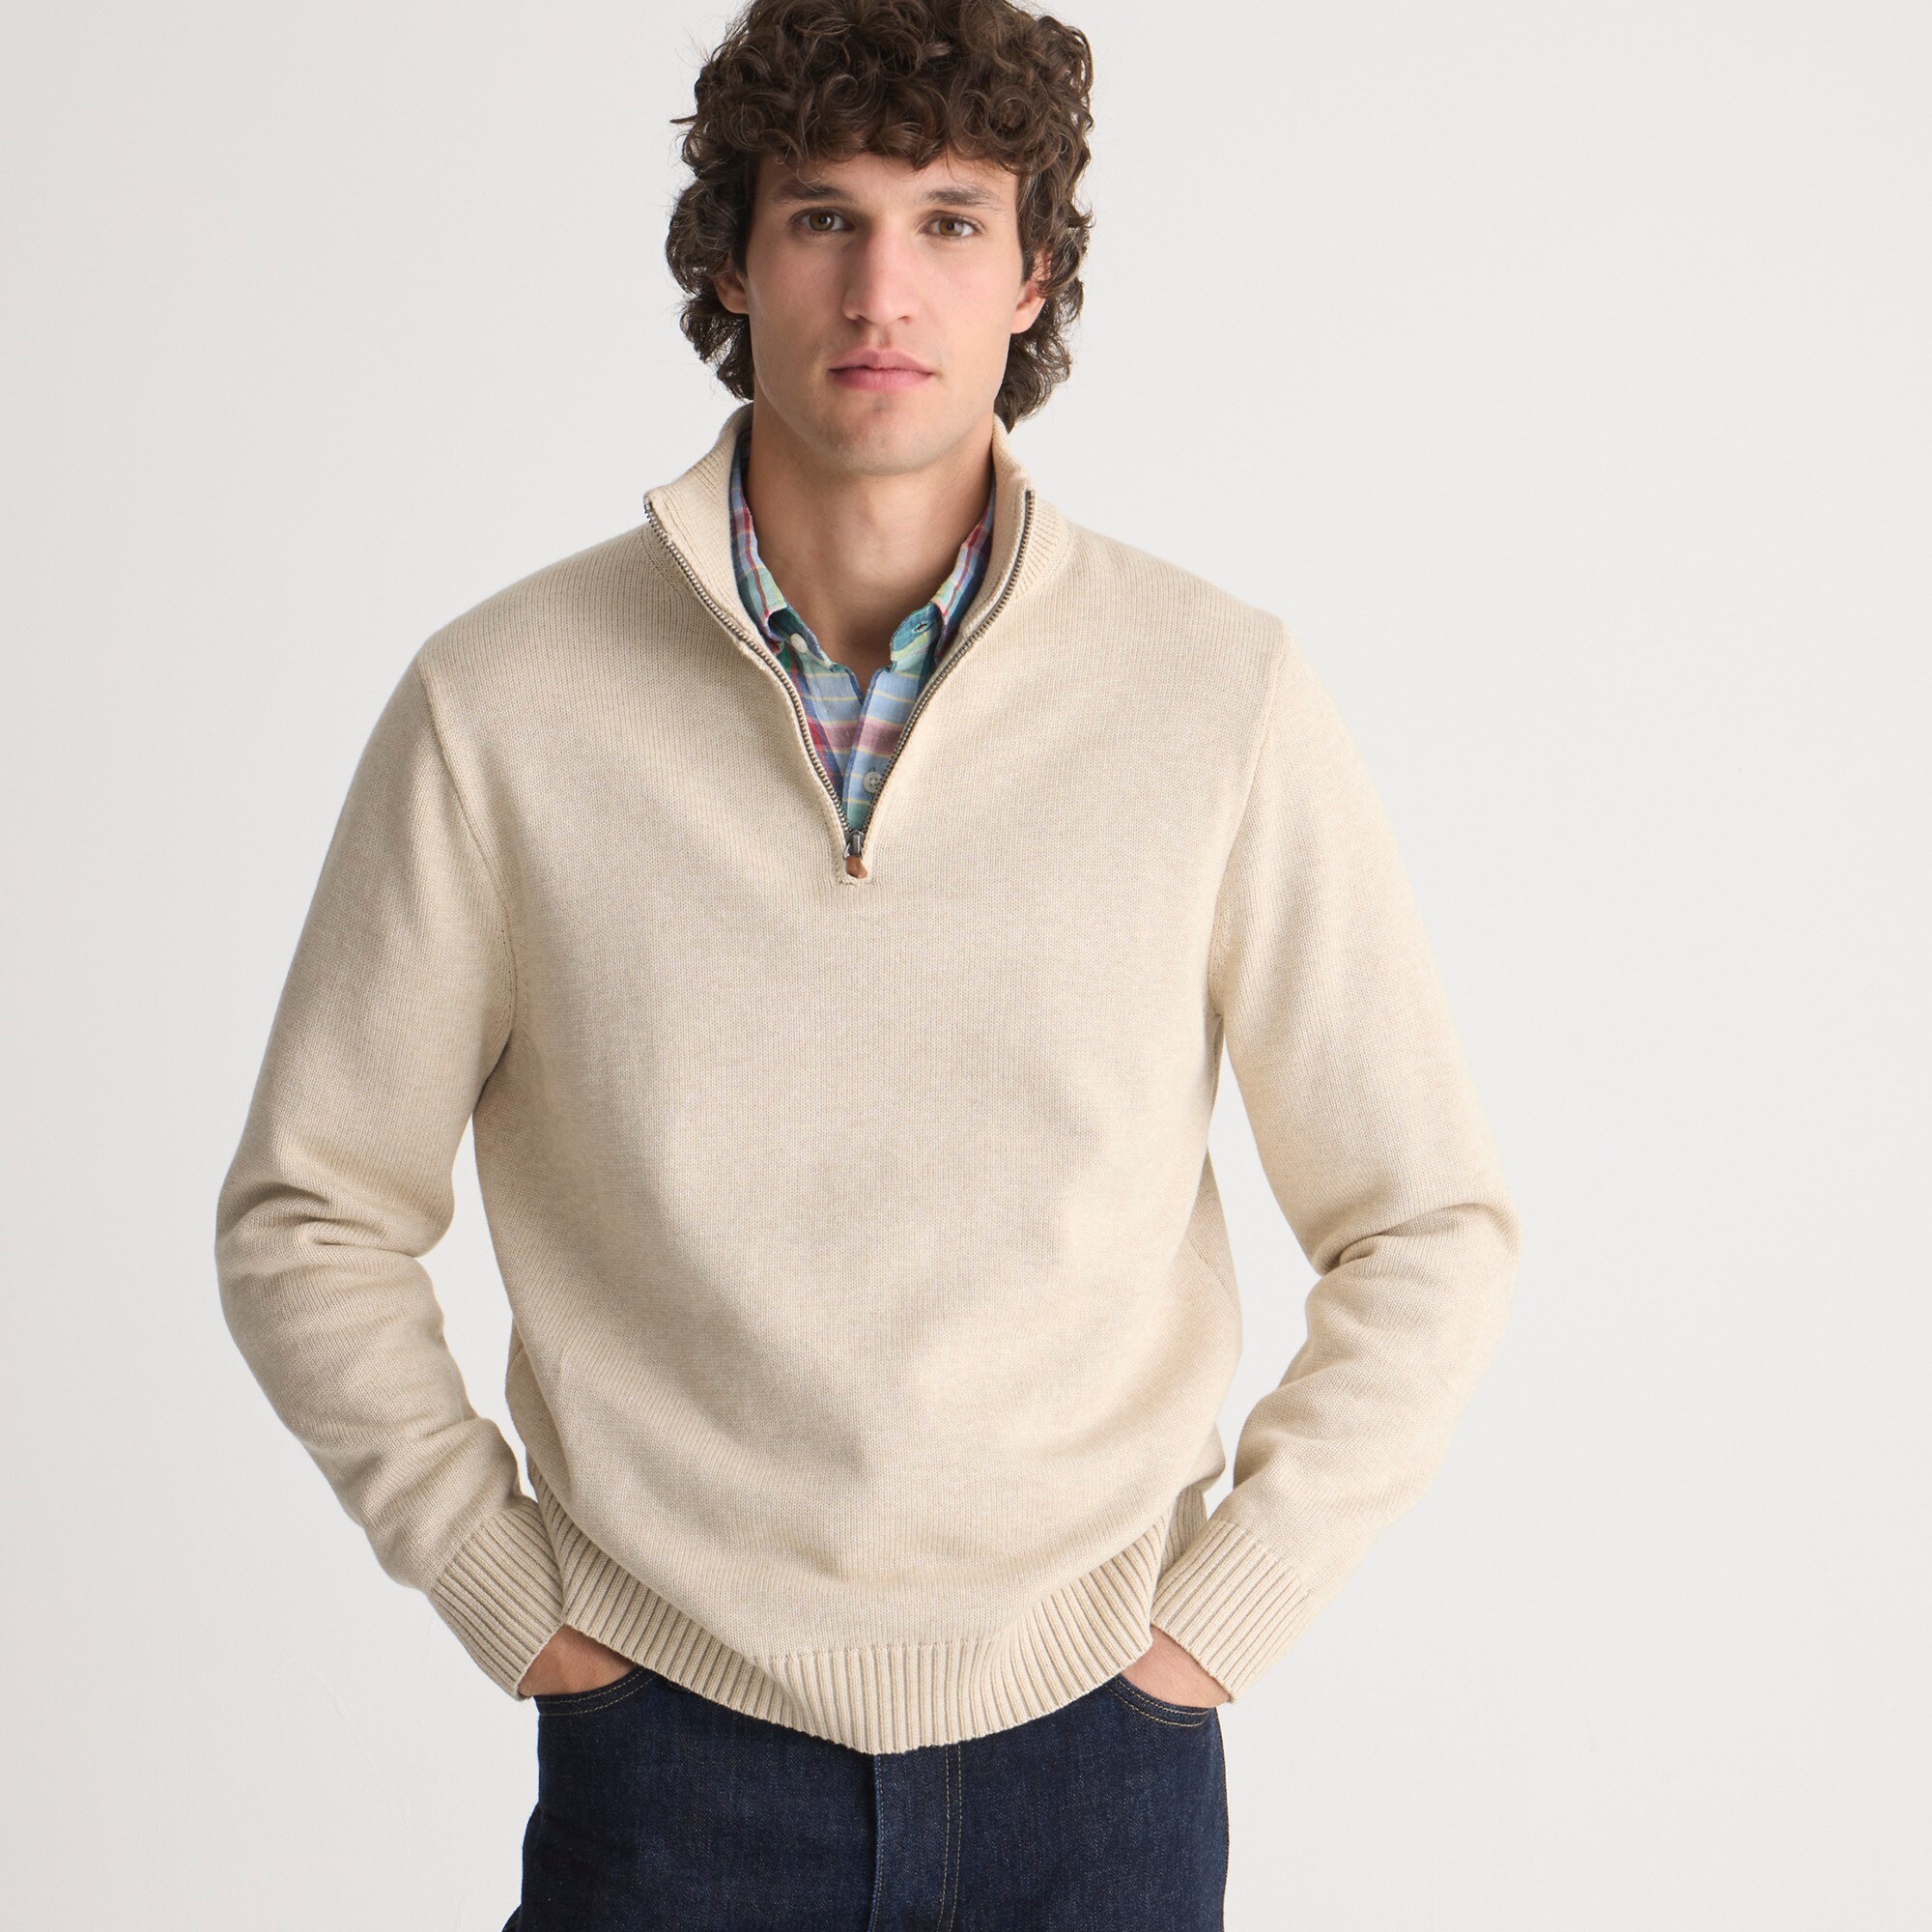  Heritage cotton half-zip sweater